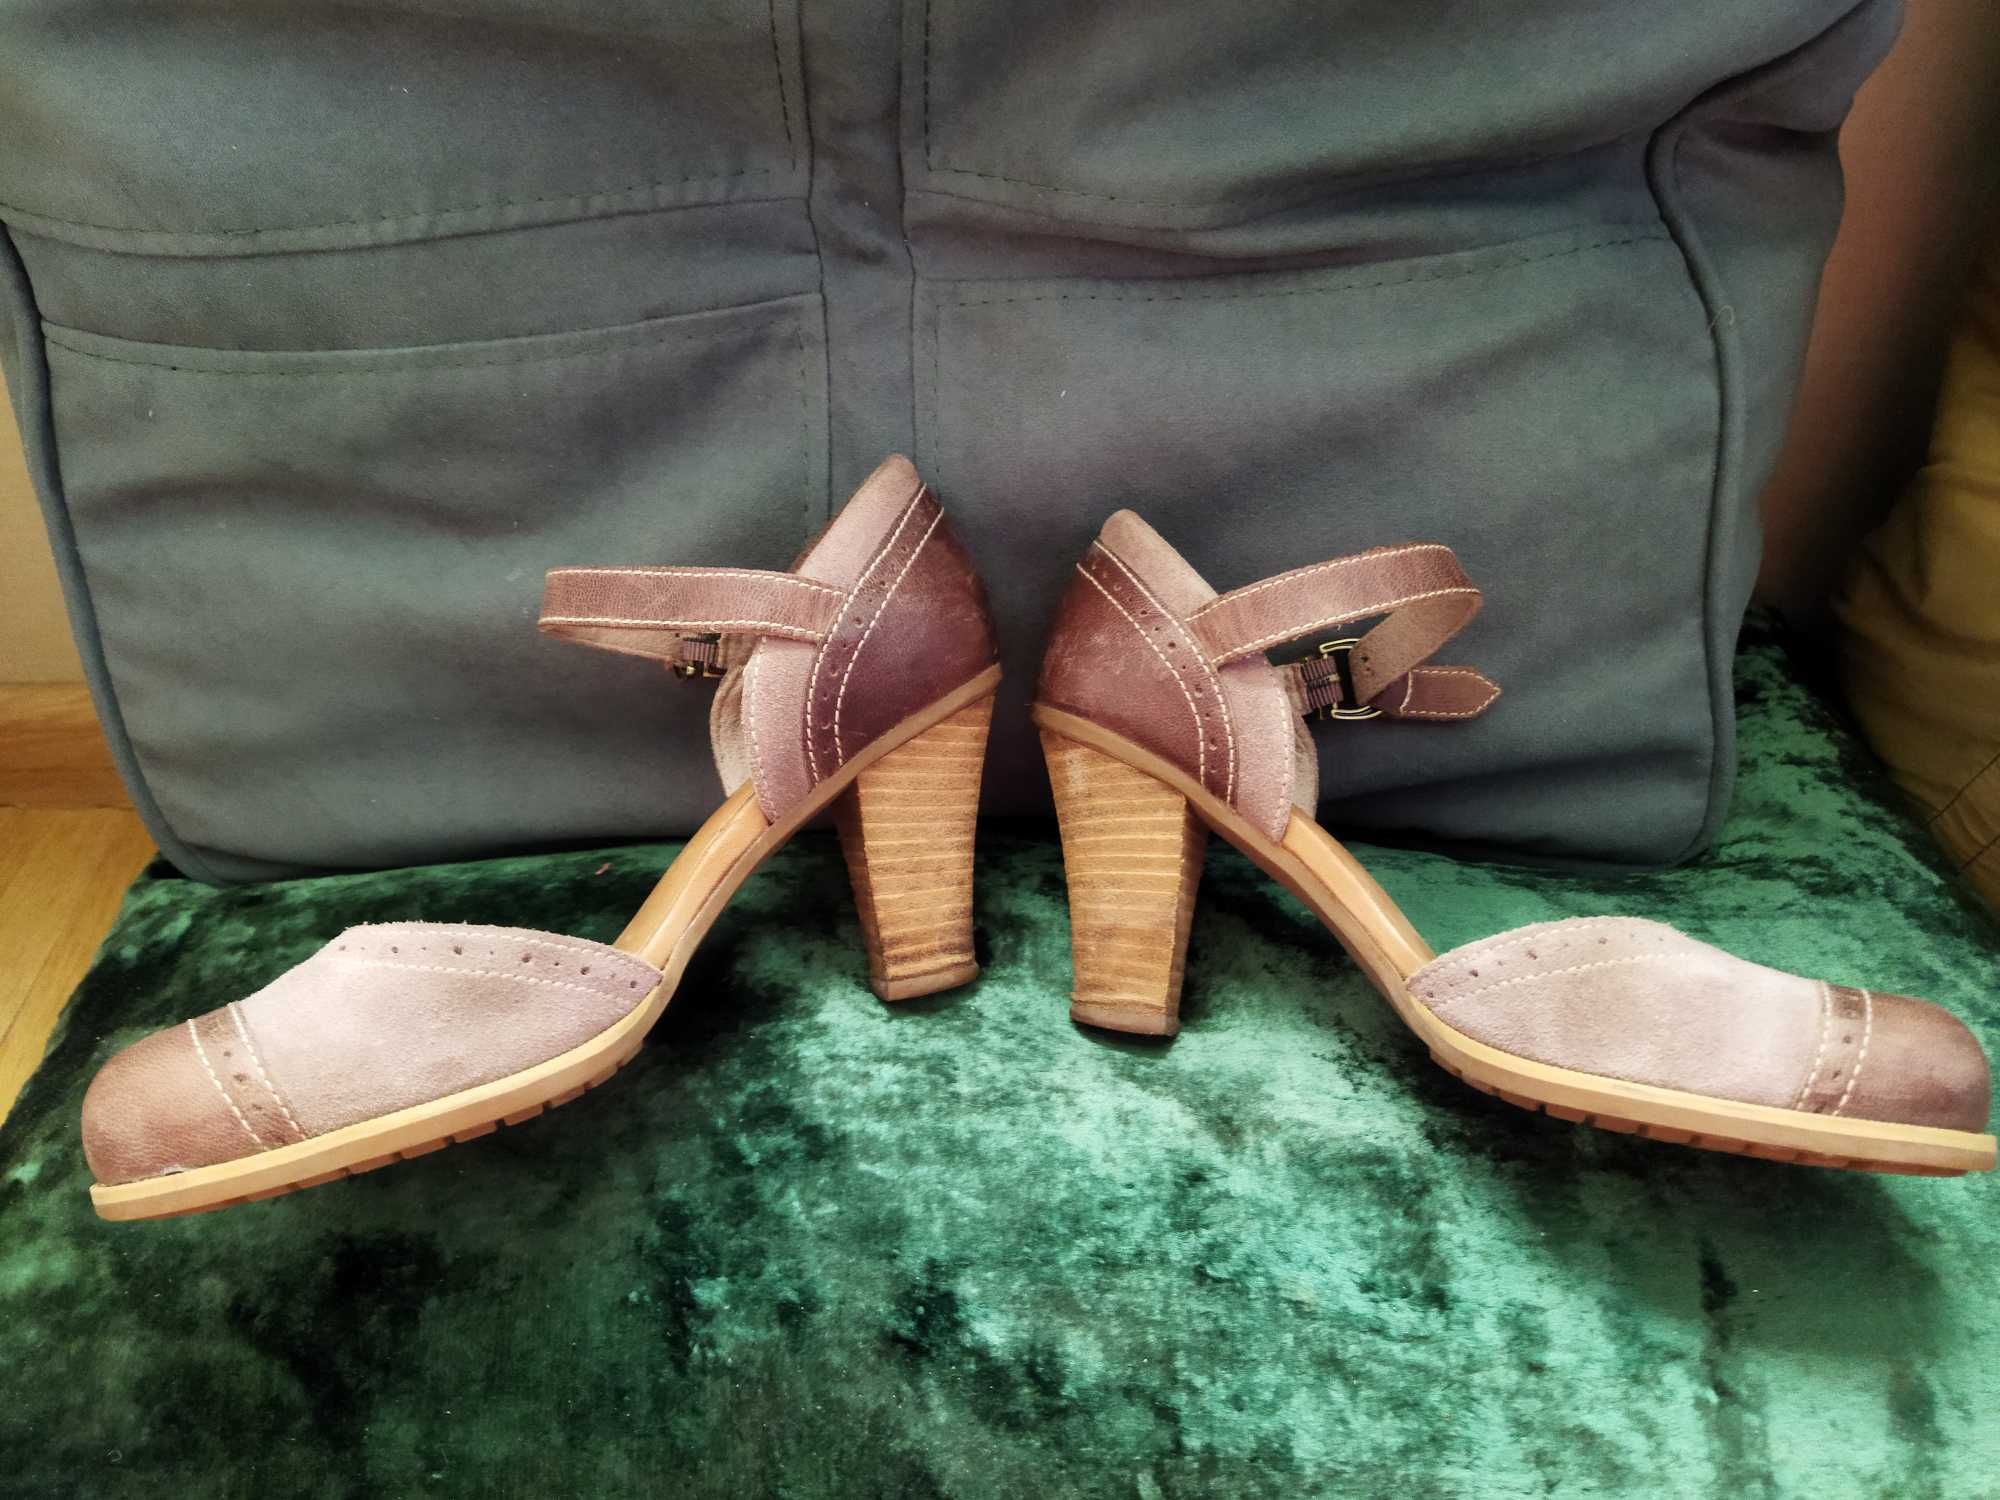 Продаются женские туфли, Тимберленд